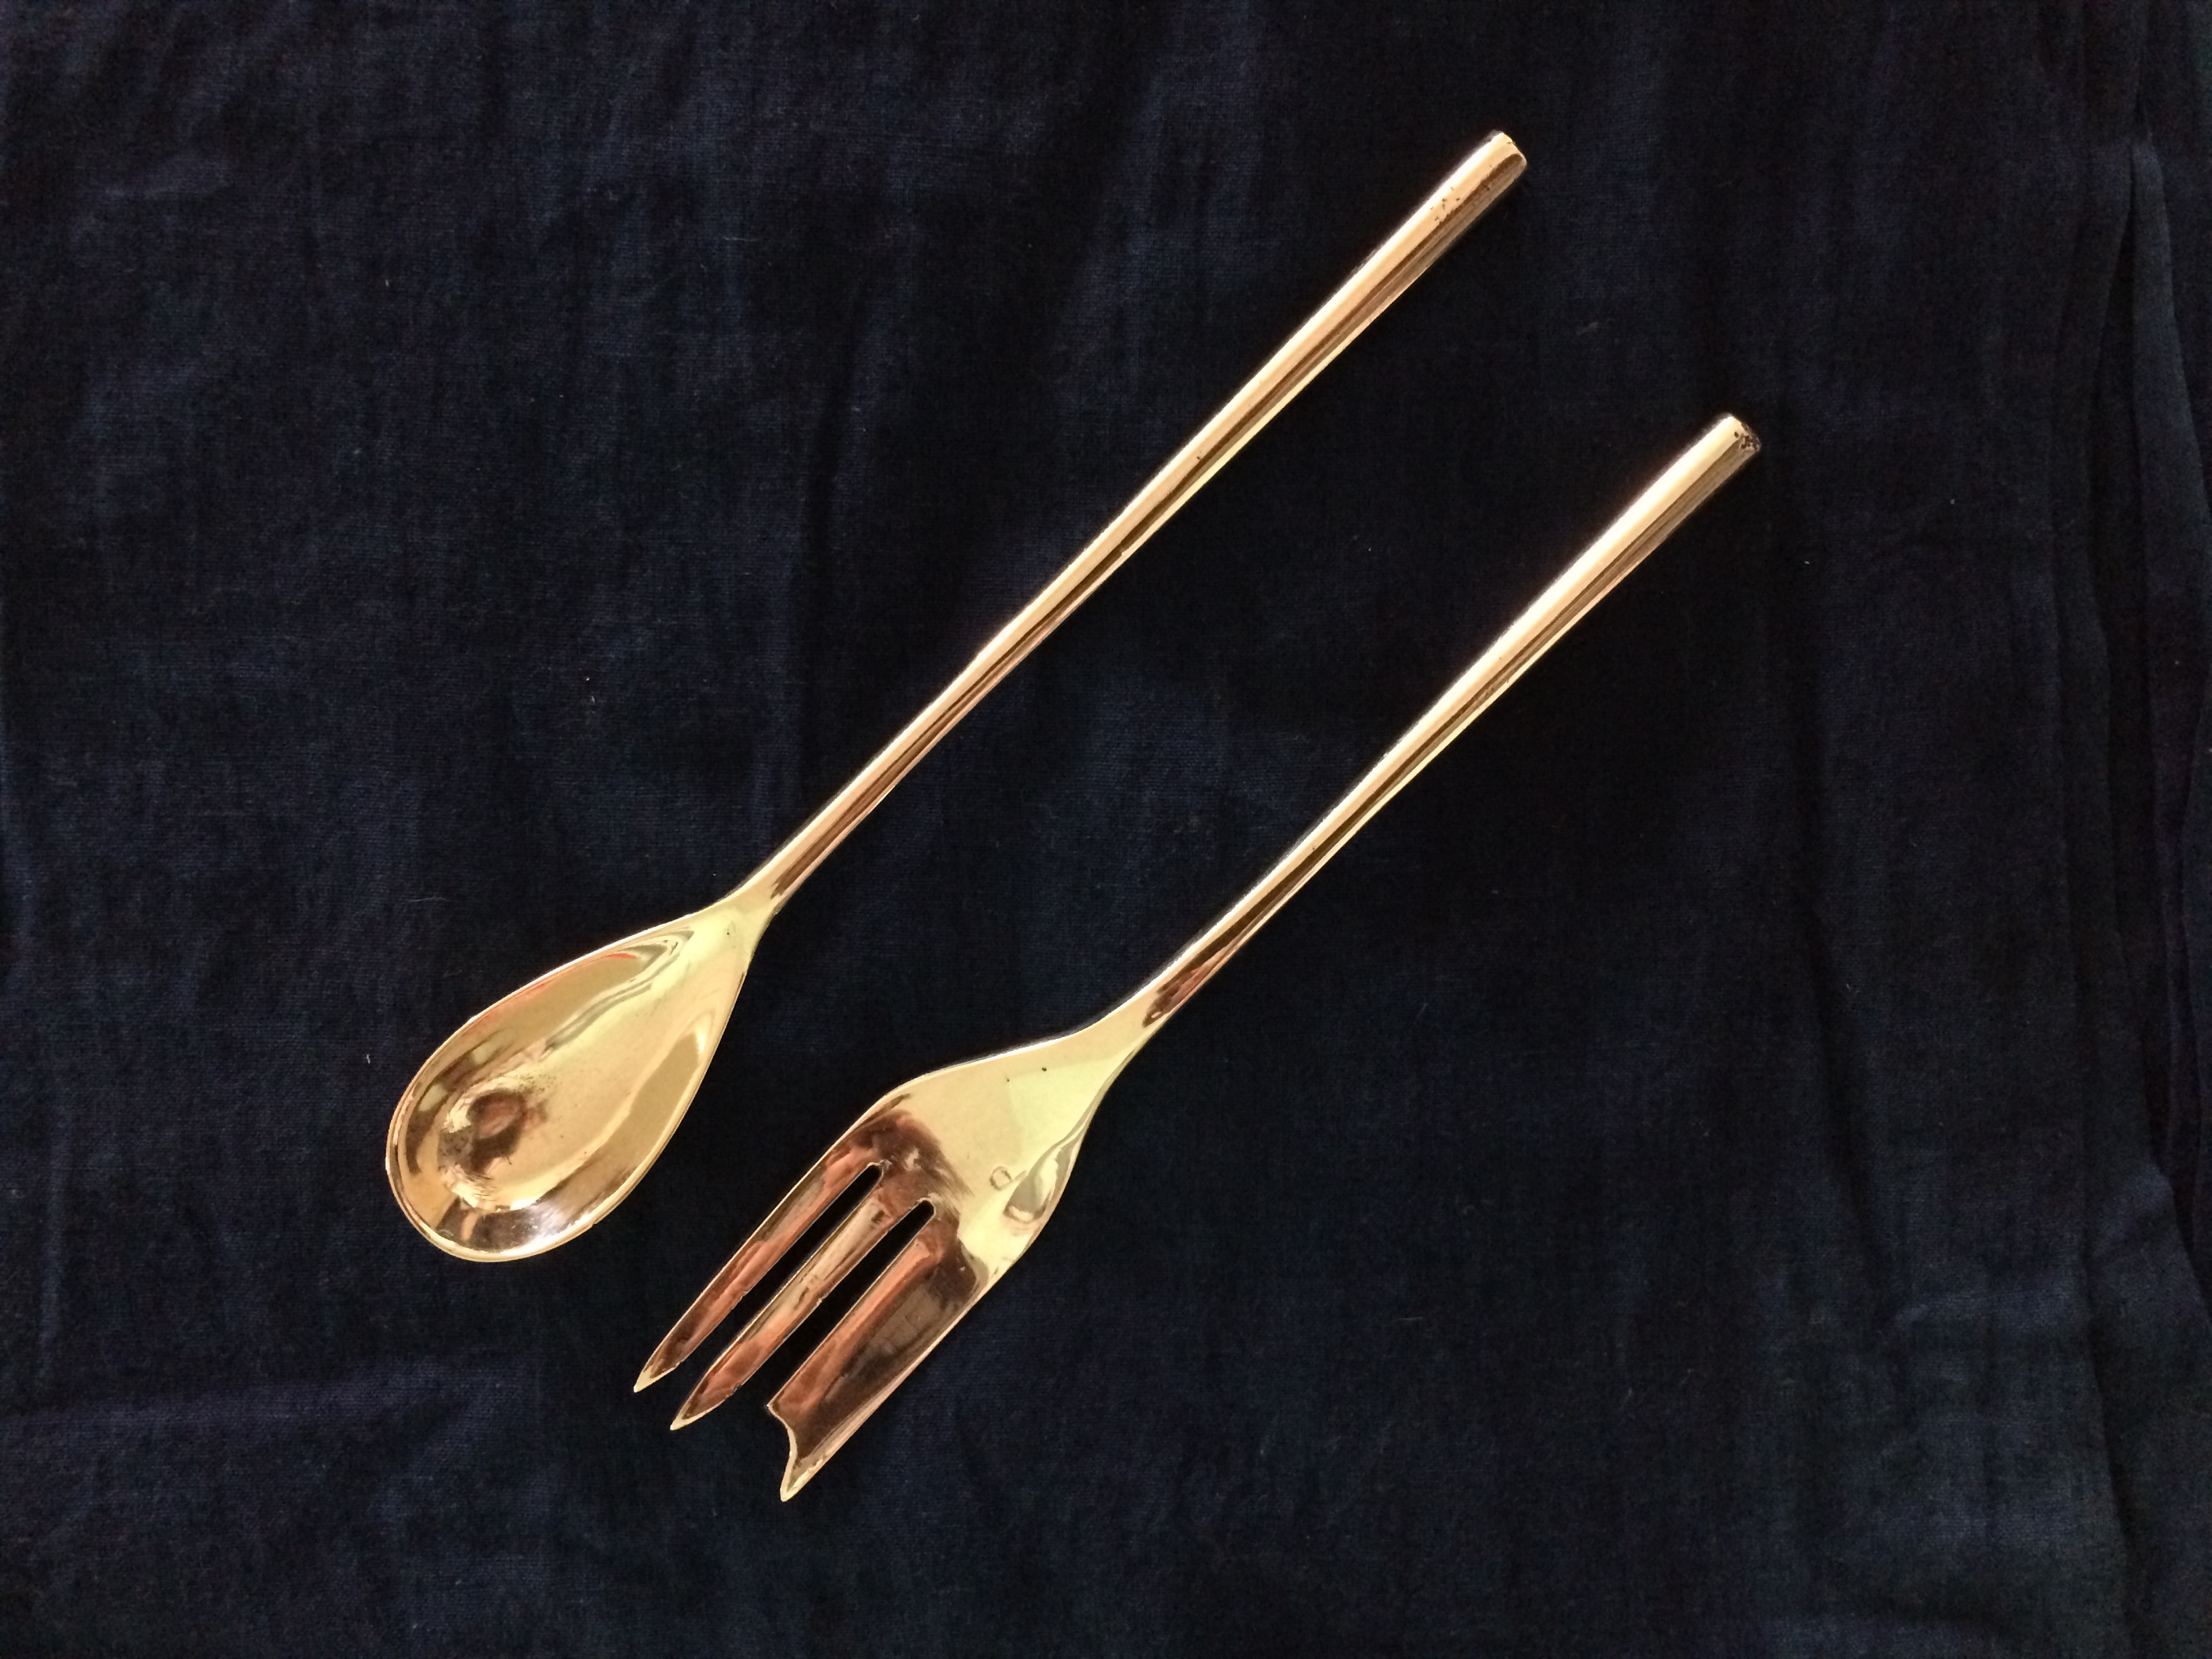 Brass cutlery - Cake Fork & Teas spoon sets